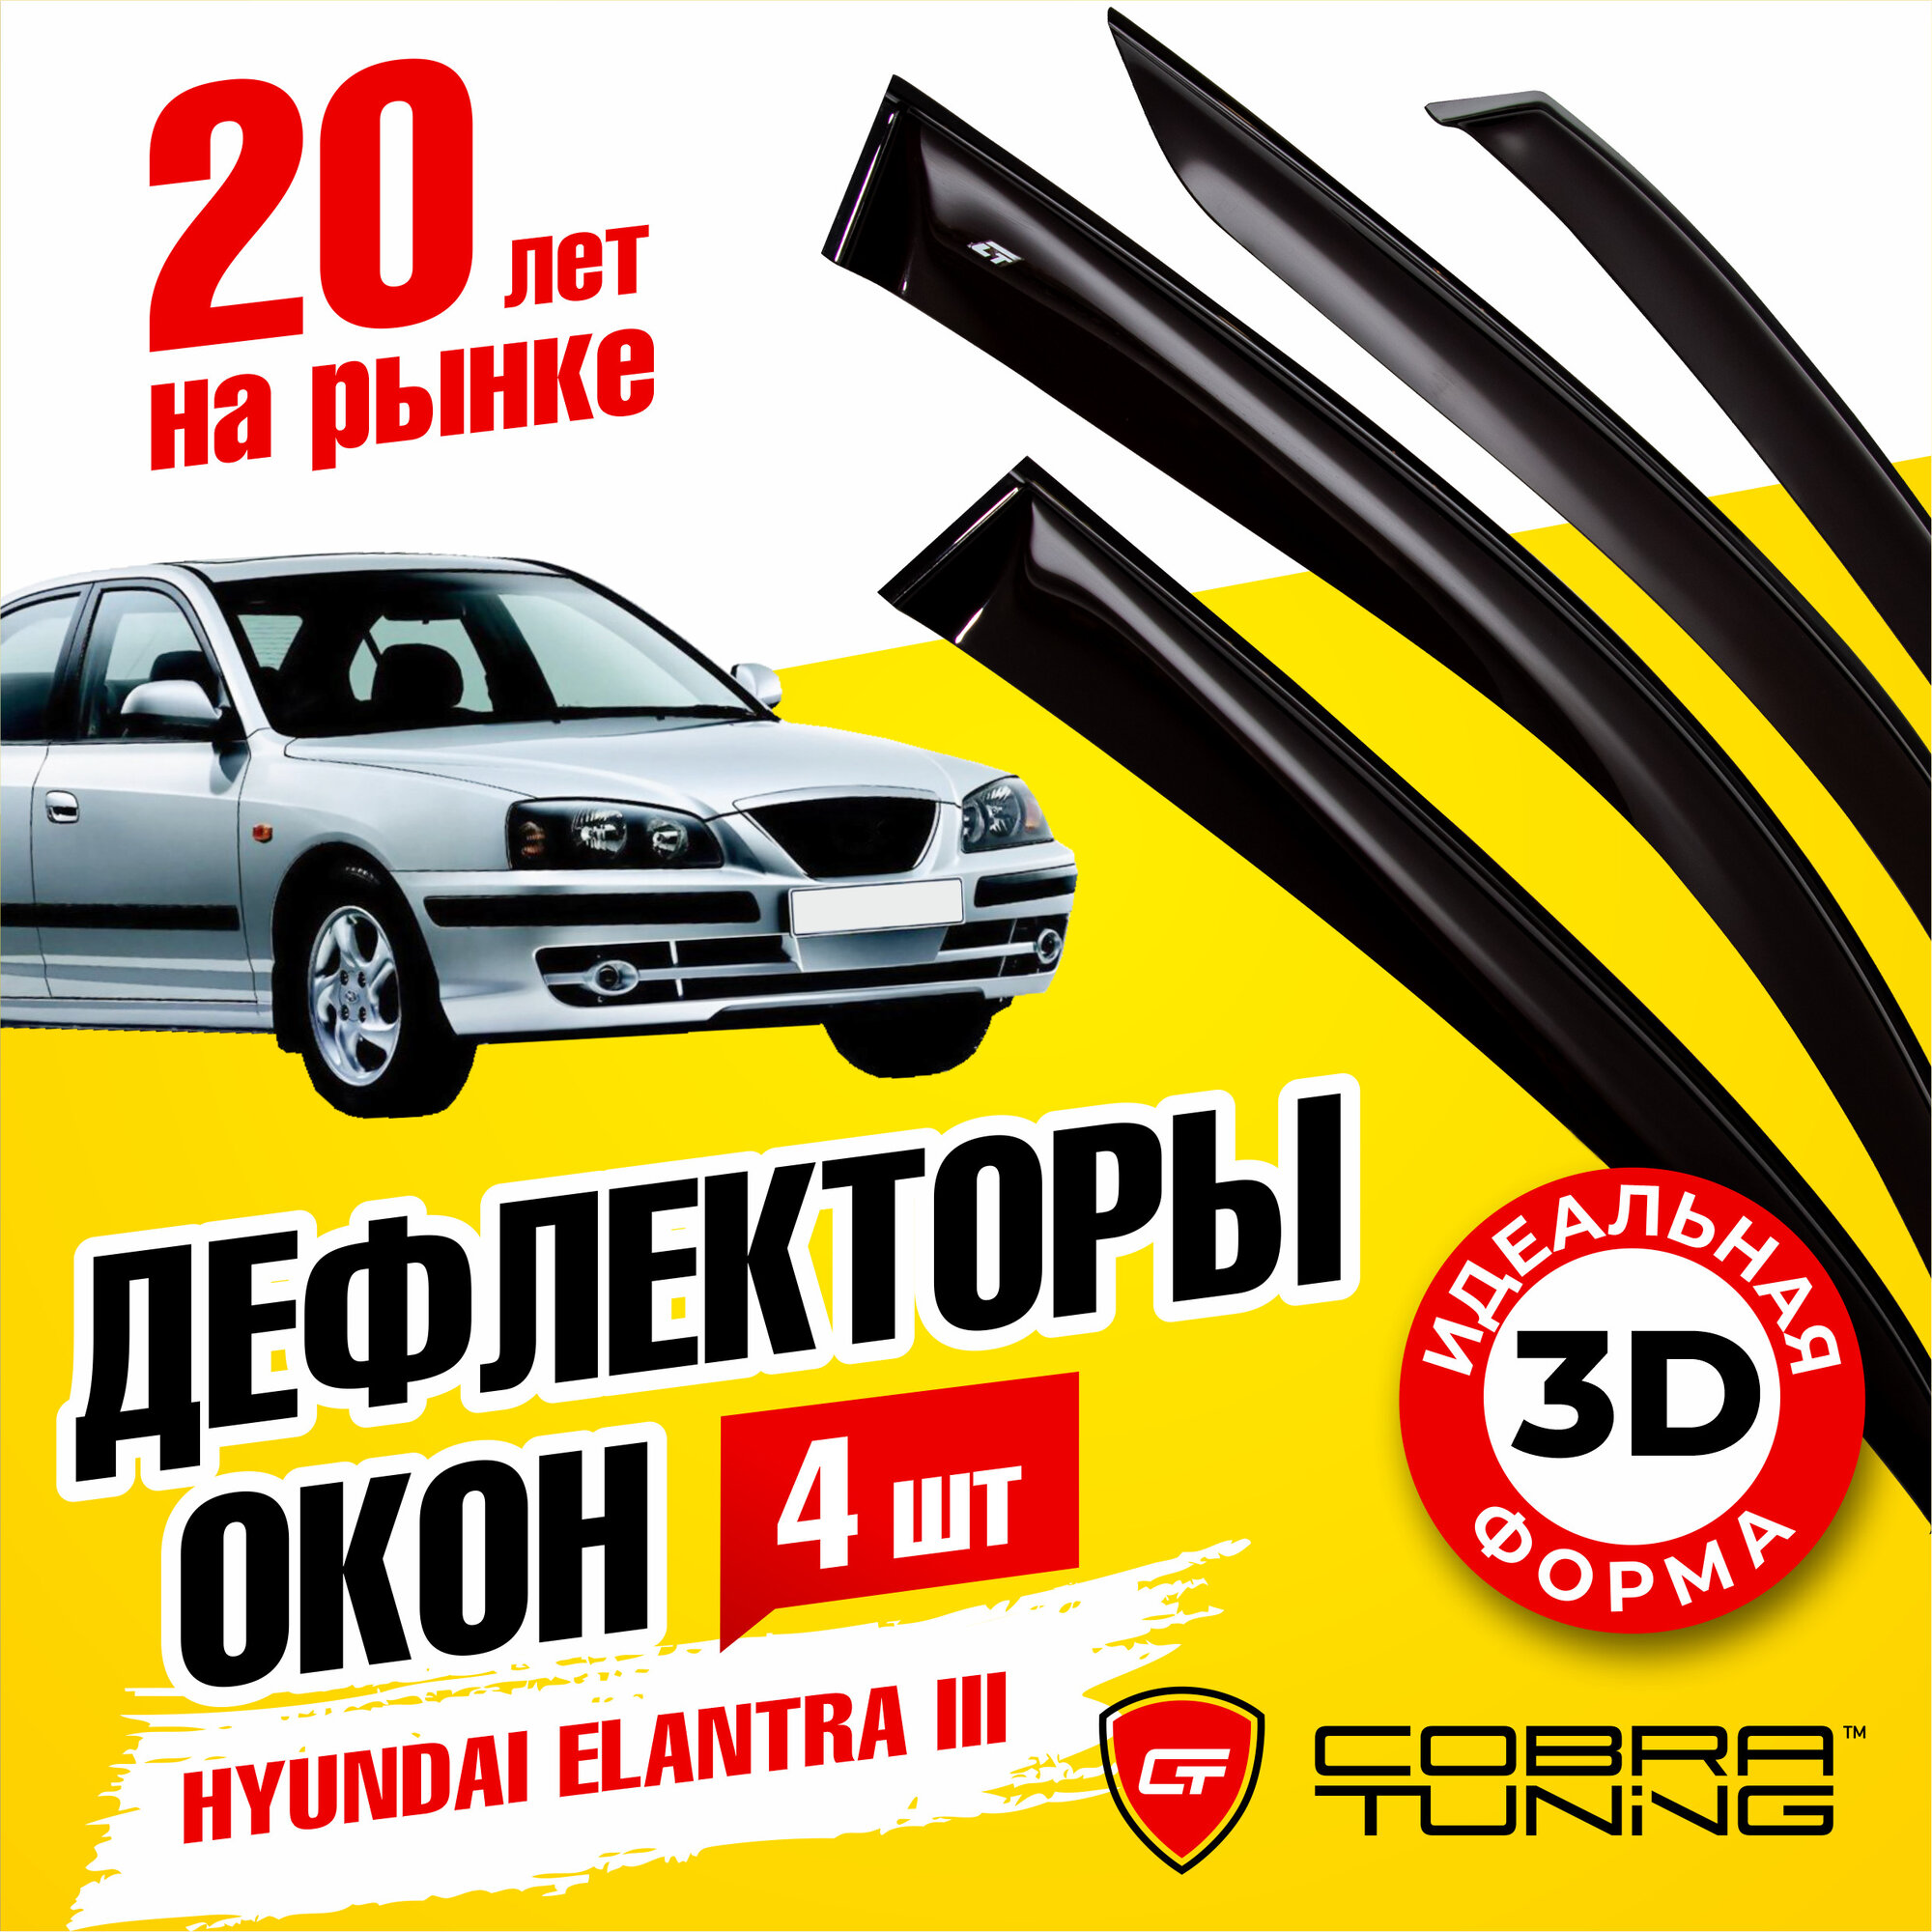 Дефлекторы боковых окон для Hyundai Elantra 3 (Хендай Элантра) седан 2000-2006, ветровики на двери автомобиля, Cobra Tuning